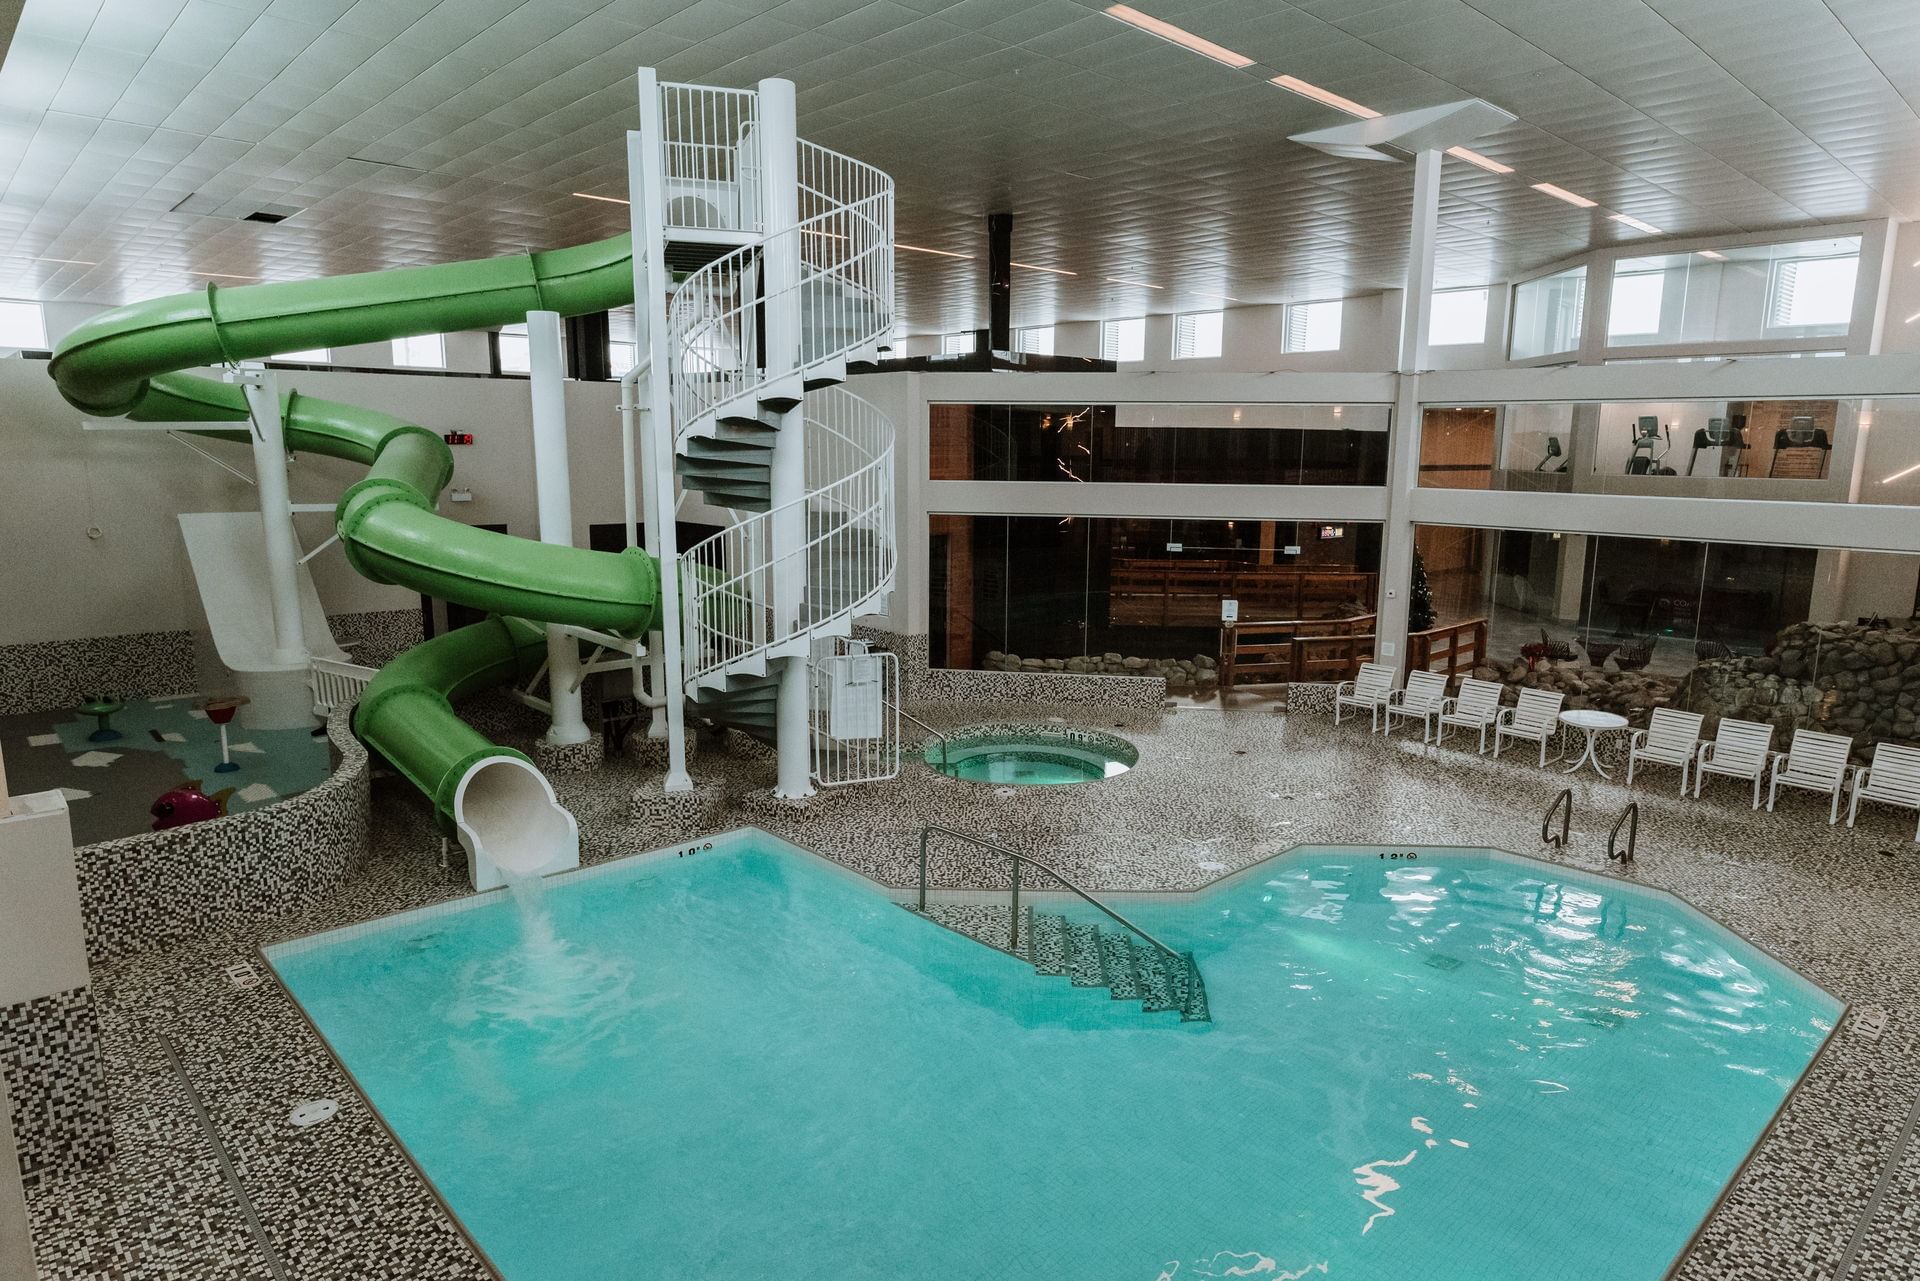 Indoor pool with green waterslide